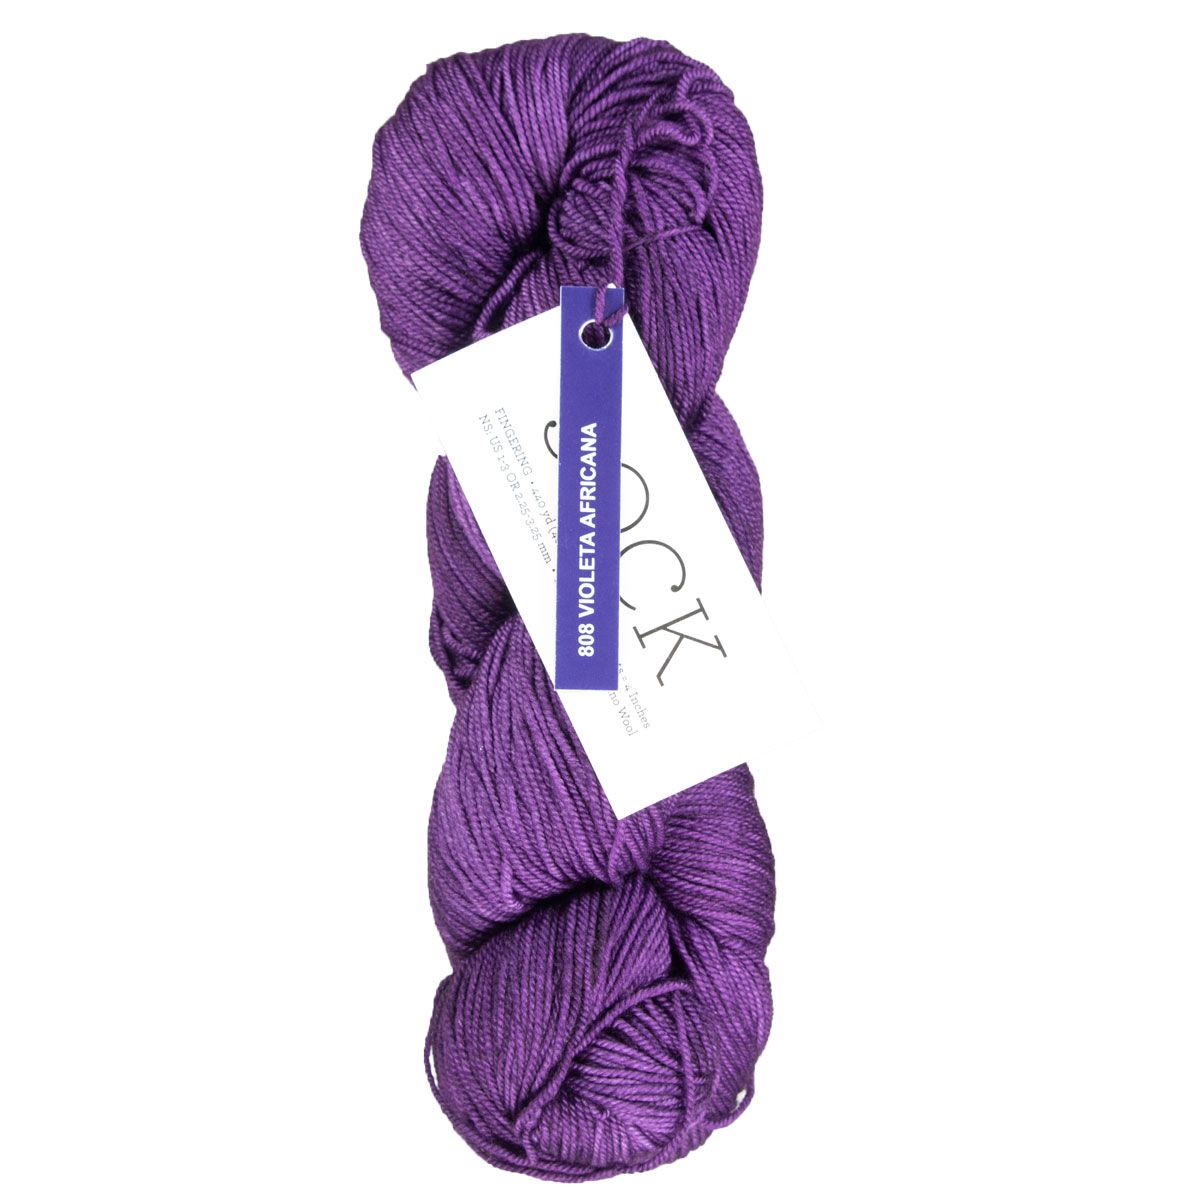 Malabrigo Sock Yarn - 808 Violeta Africana at Jimmy Beans Wool